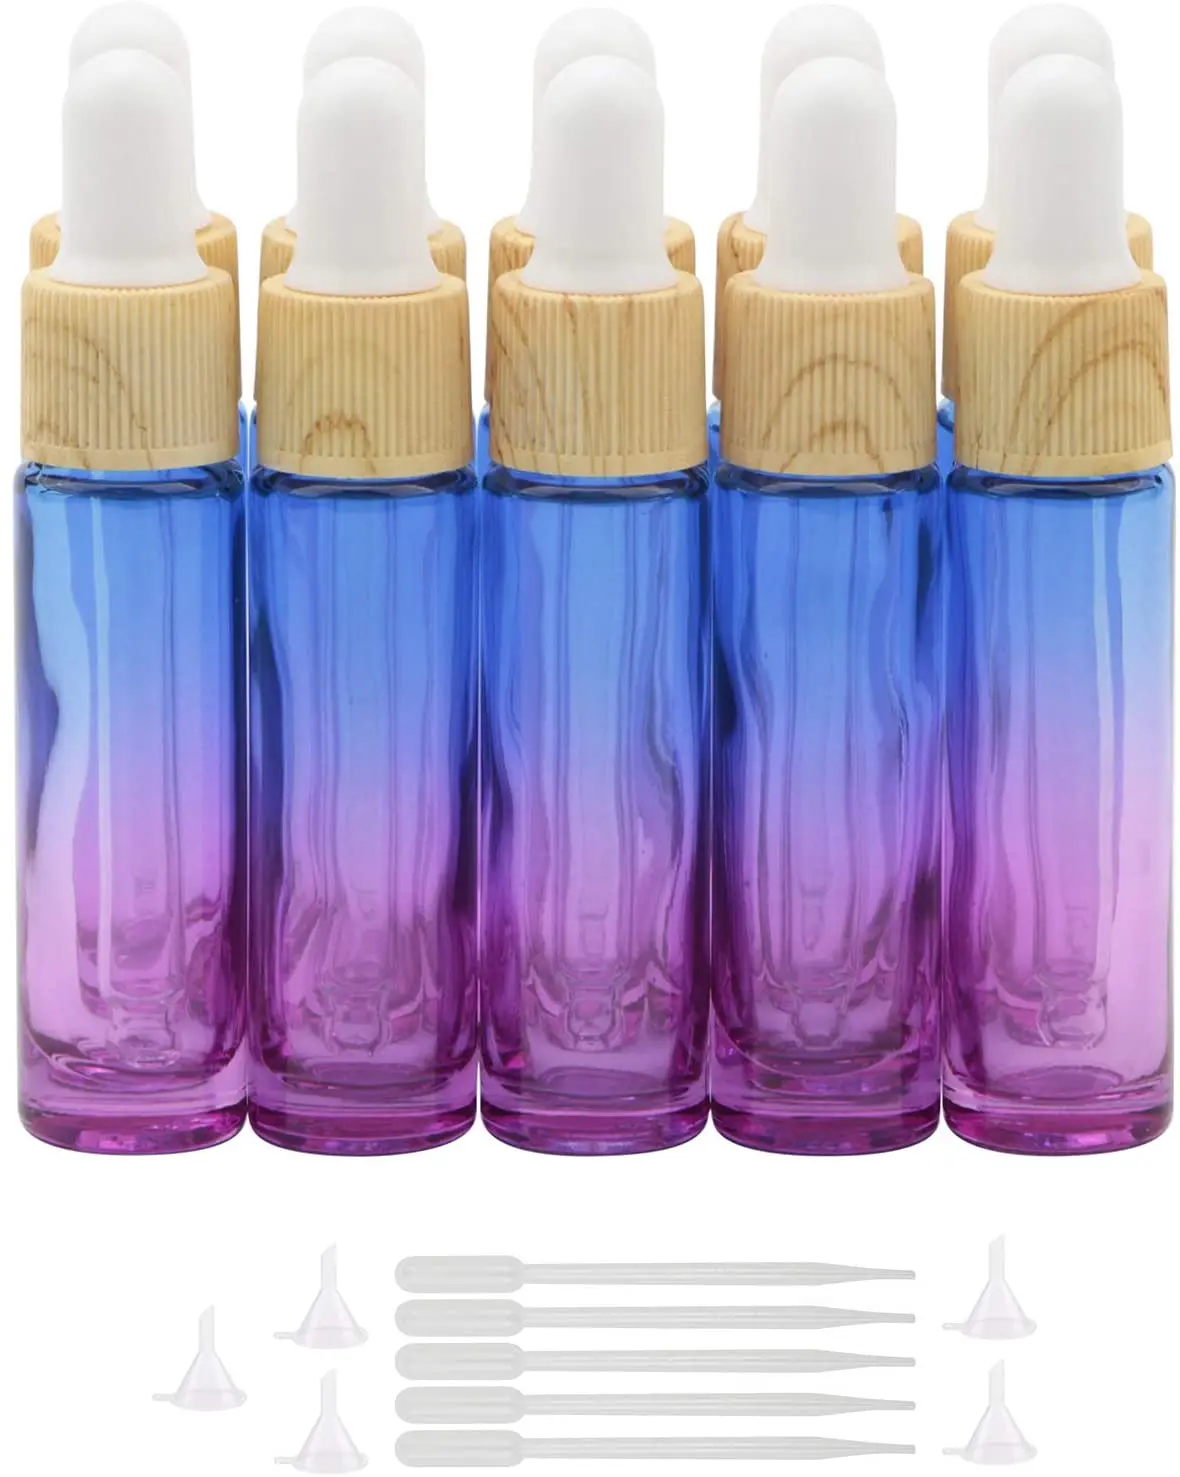 Gotero de cristal grueso con gradiente azul y púrpura, frascos goteros para Perfumes, aceites esenciales, productos químicos de laboratorio, 10 unidades, 10ml